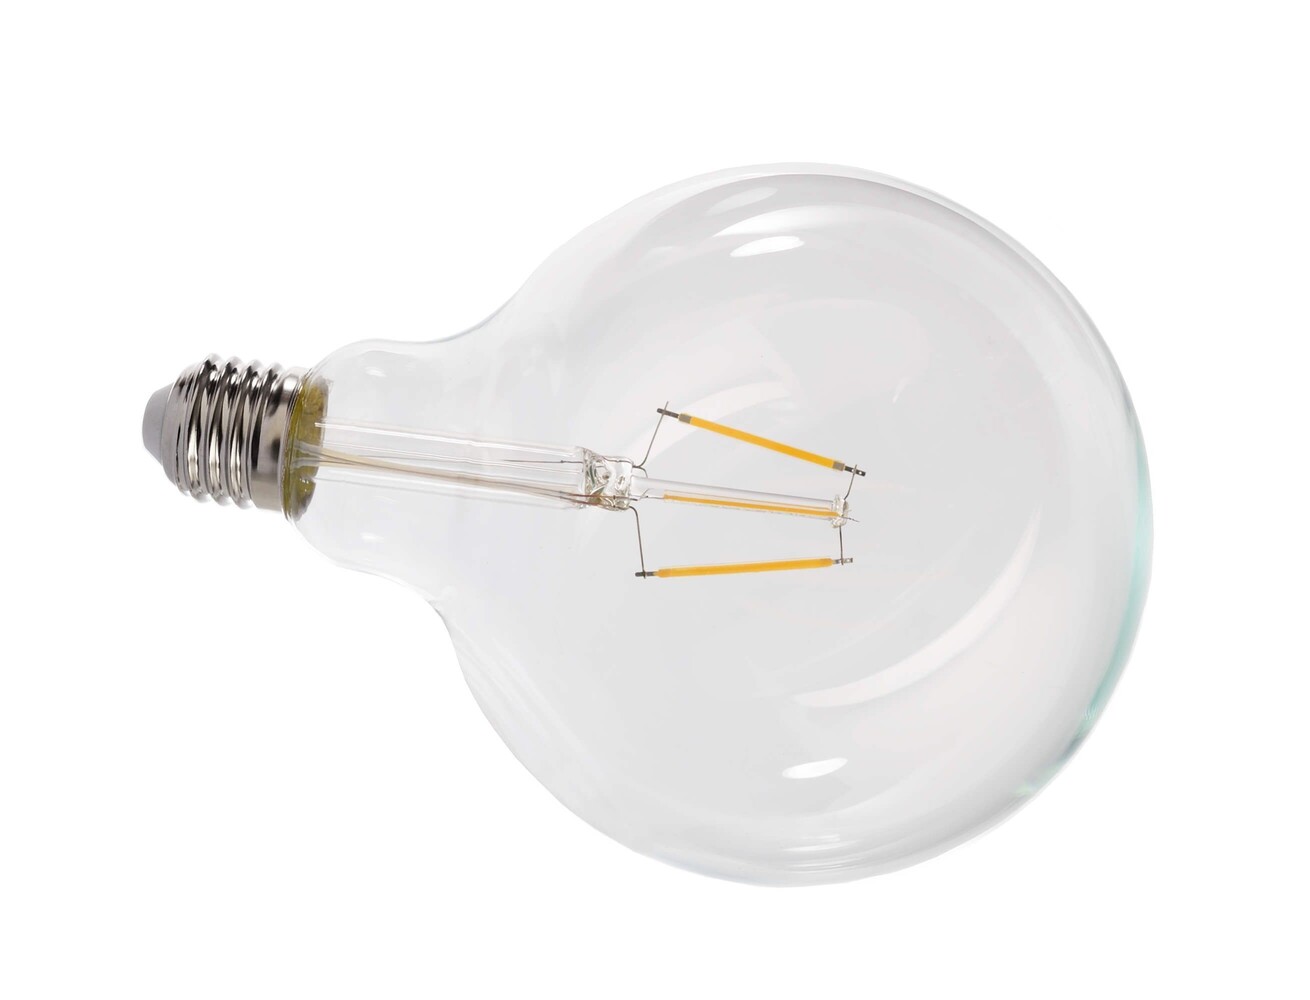 Ein elegantes Filament-Leuchtmittel der Marke Deko-Light, das eine elegante weiße Glühfadenstruktur aufweist